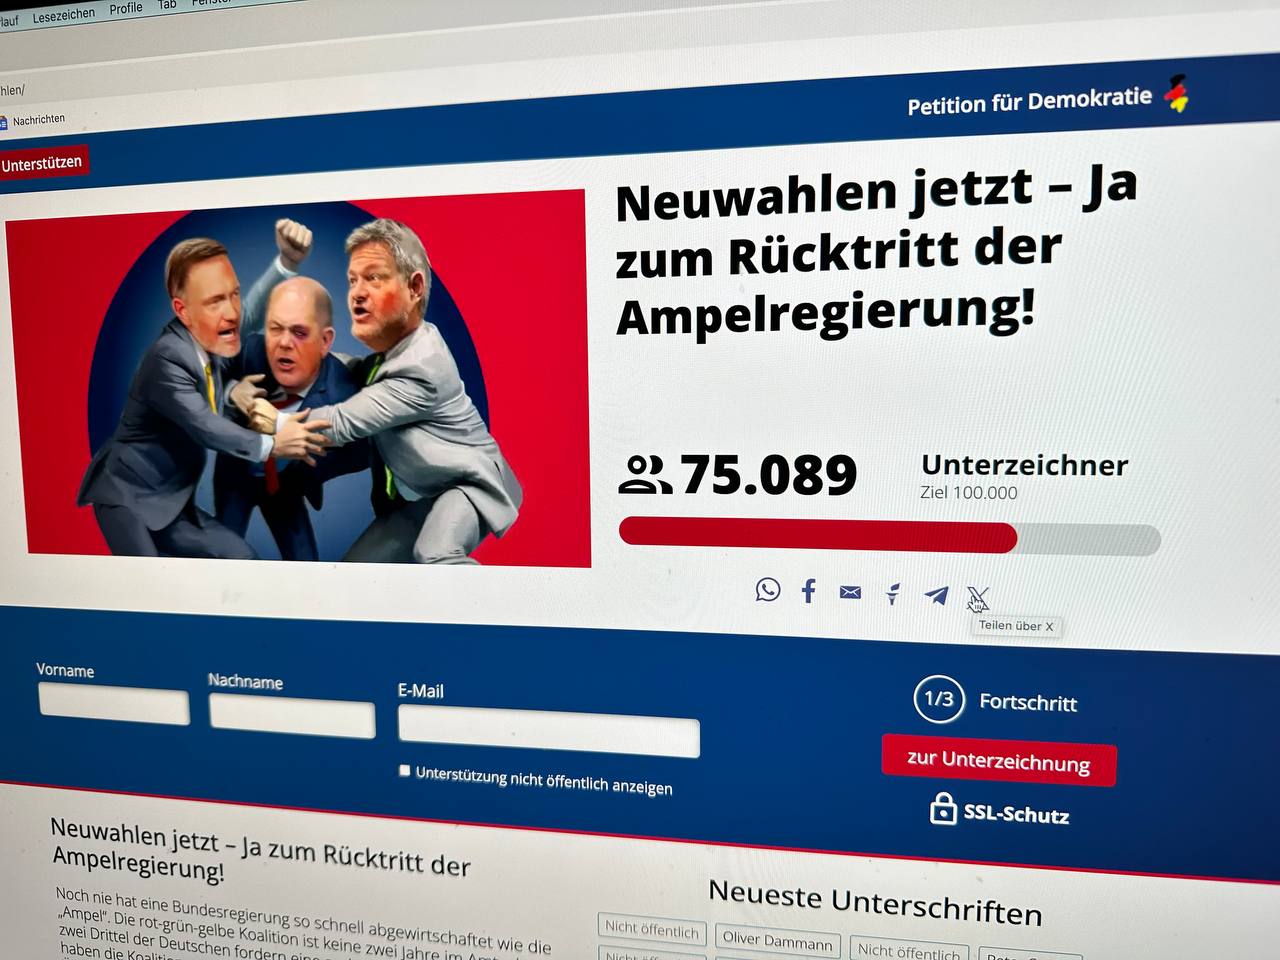 Bildschirm zeigt die Petition "Neuwahlen jetzt!" der Plattform petitionfuerdemokratie.de